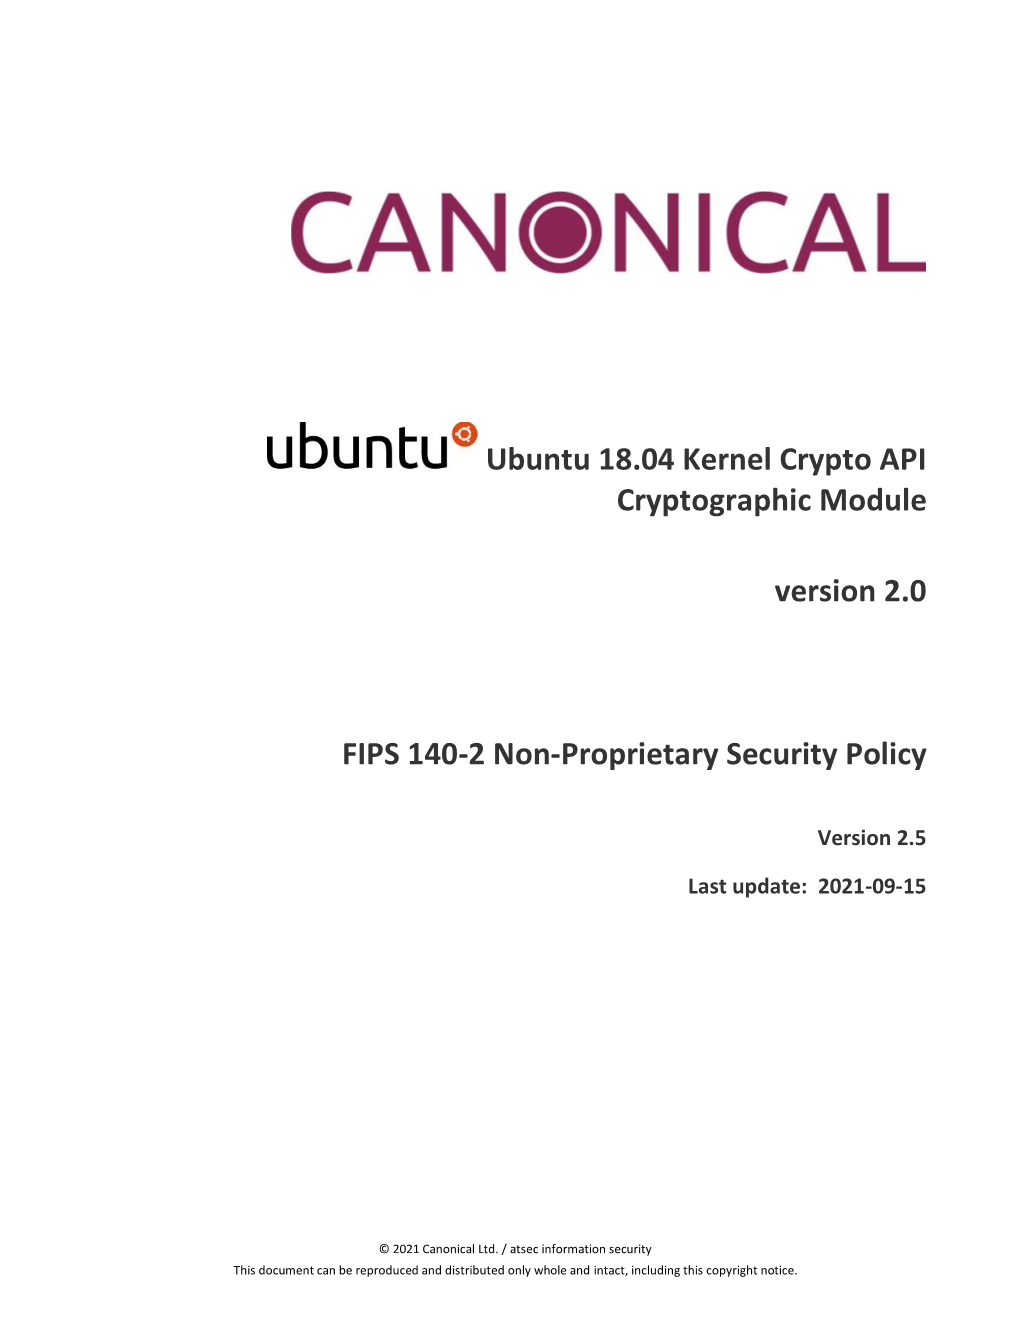 Ubuntu 18.04 Kernel Crypto API Cryptographic Module Version 2.0